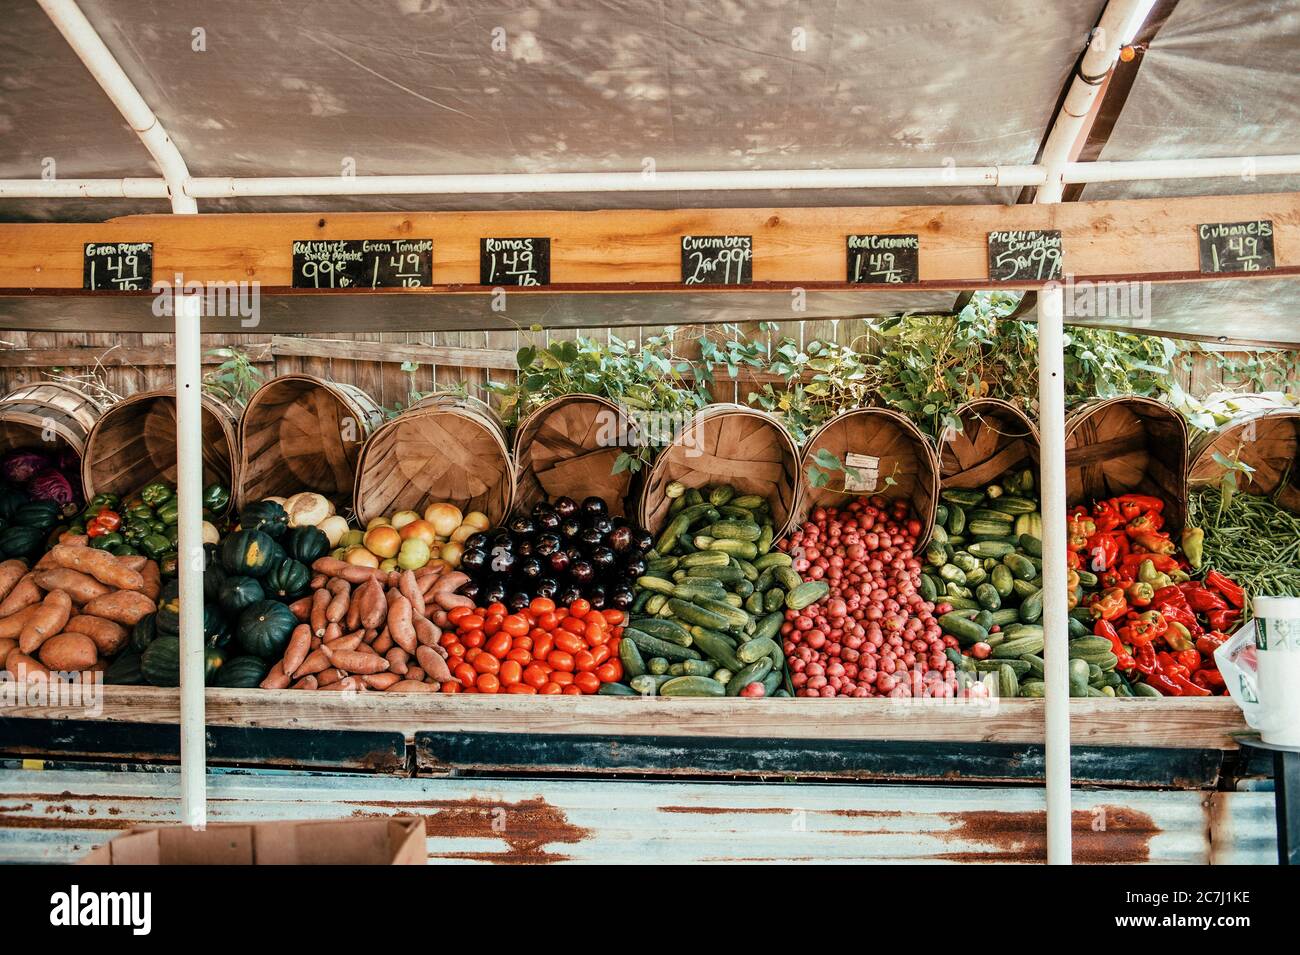 Hay un puesto de frutas y verduras frescas o un mercado de productos al borde de la carretera en Tampa, Florida. Foto de stock